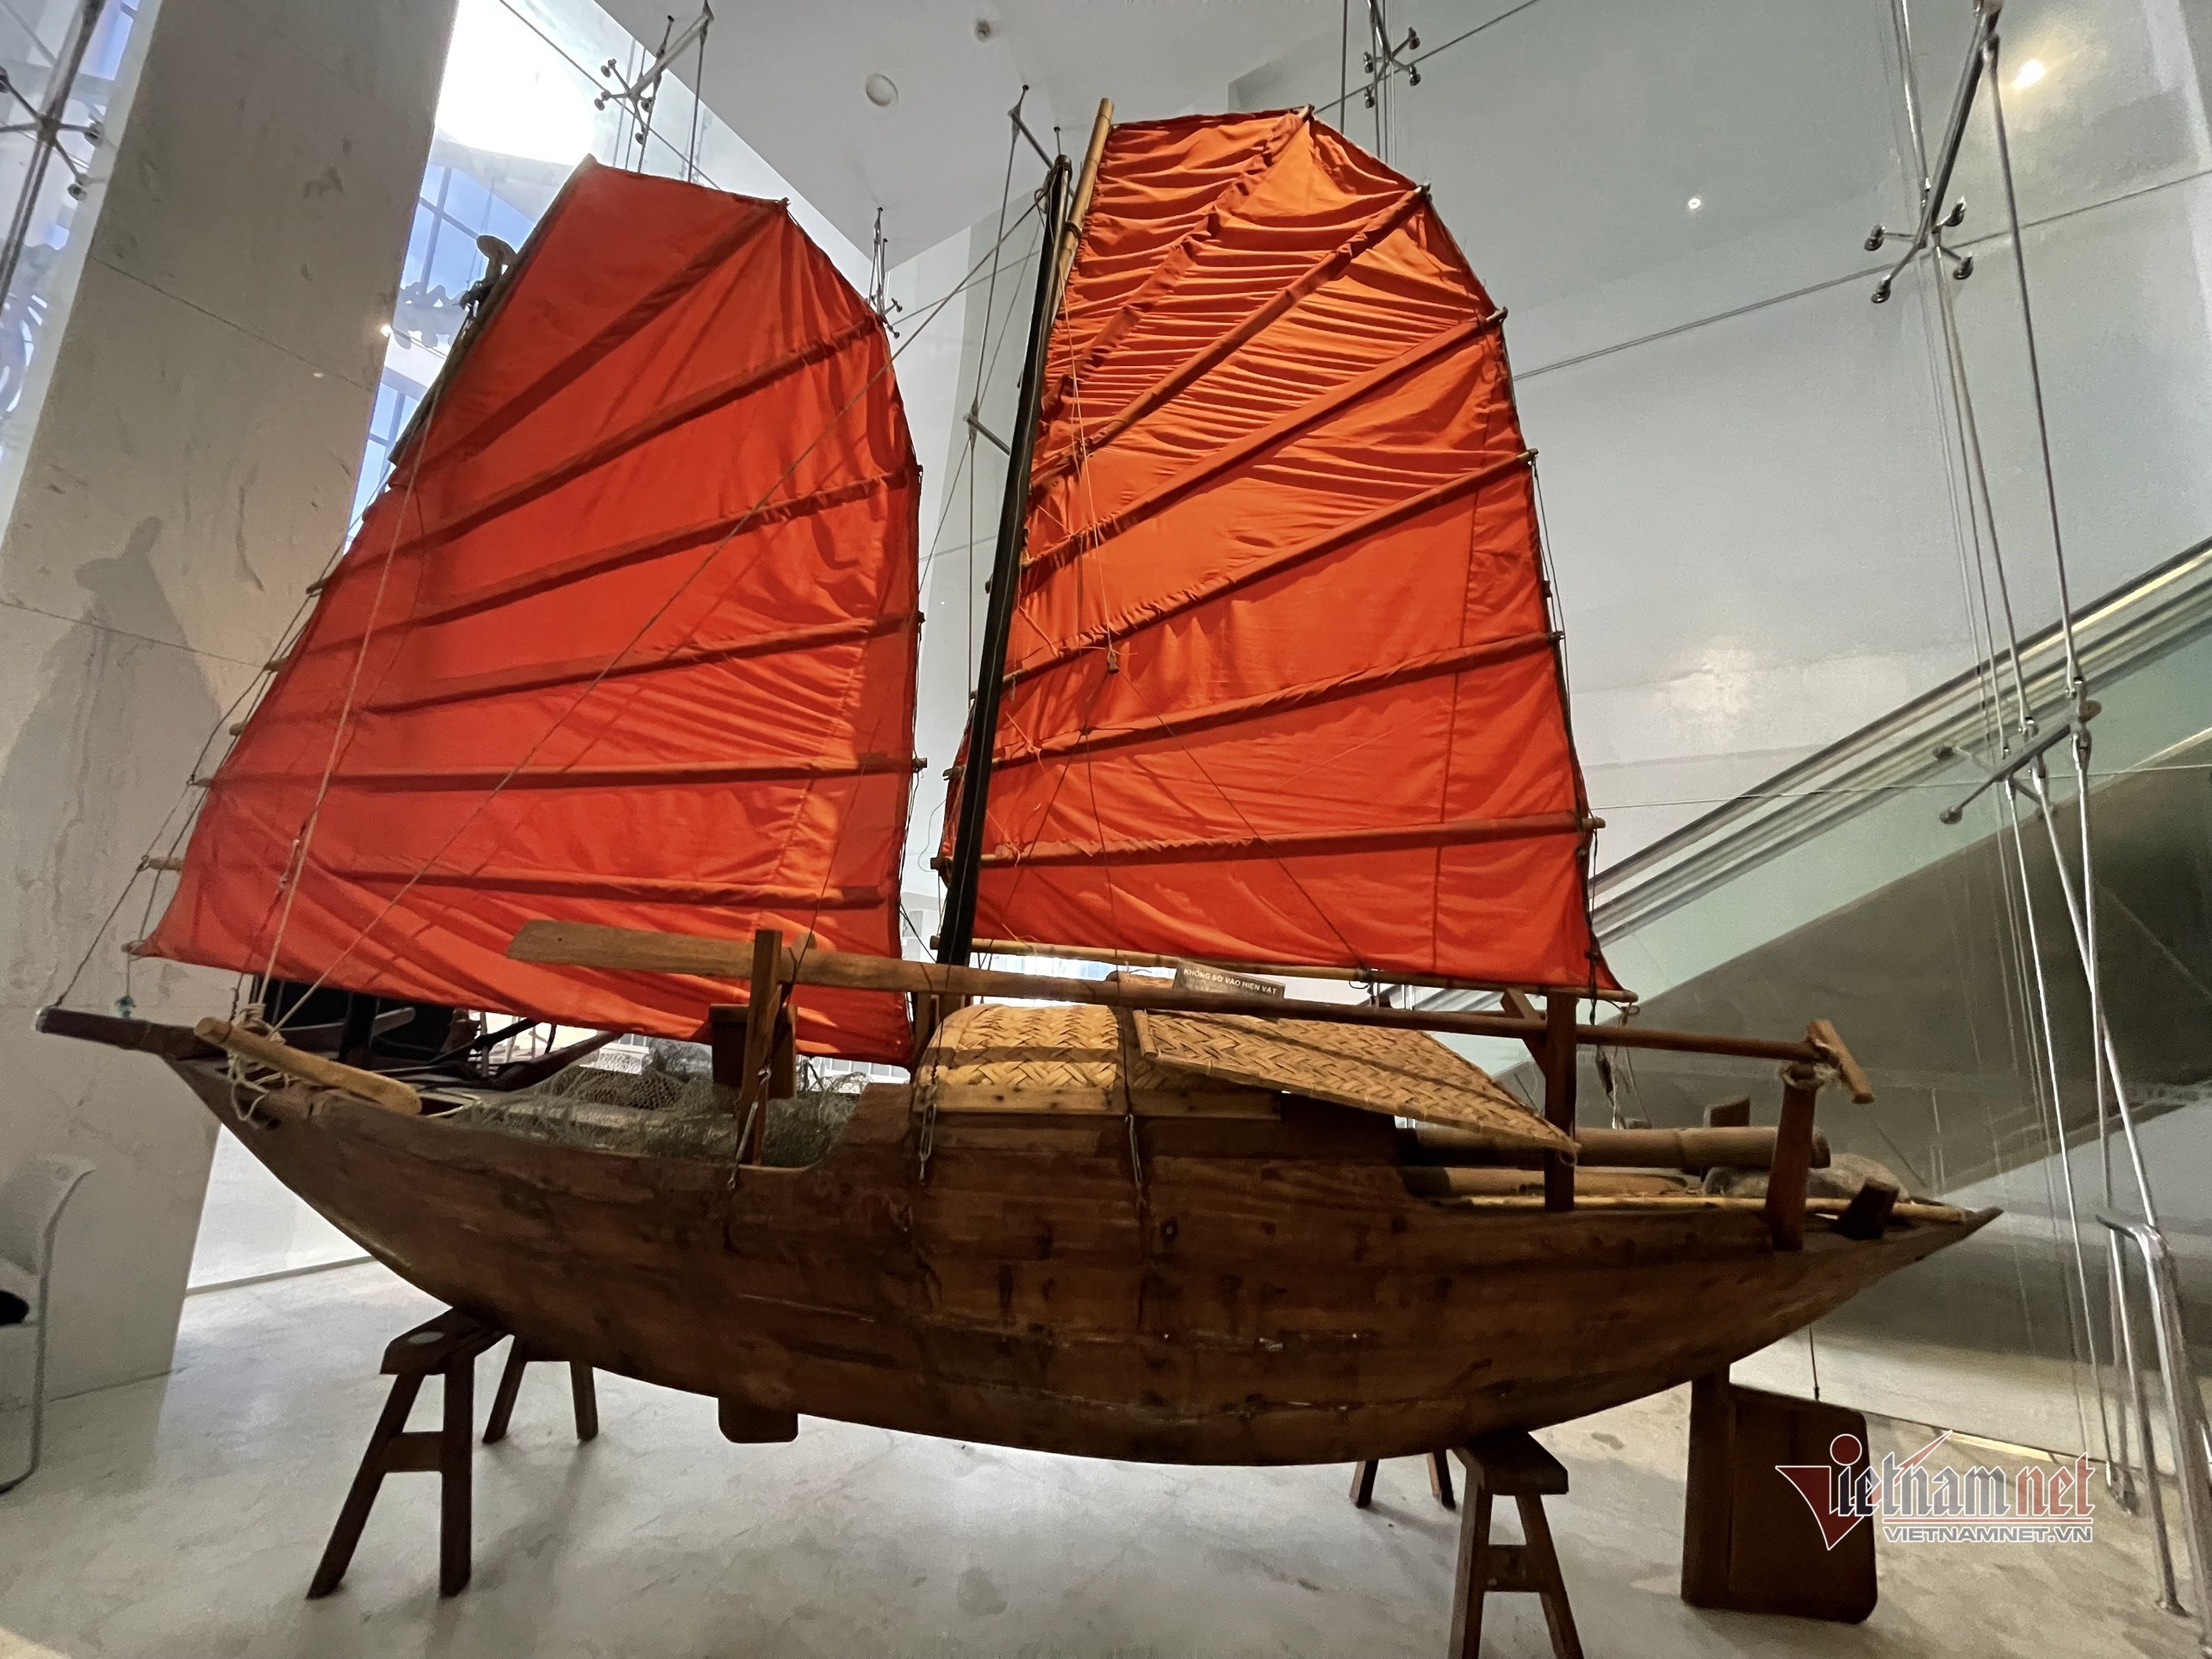 Người giữ 'bí kíp' làm thuyền buồm đi ngược gió ở làng nghề hơn 600 tuổi